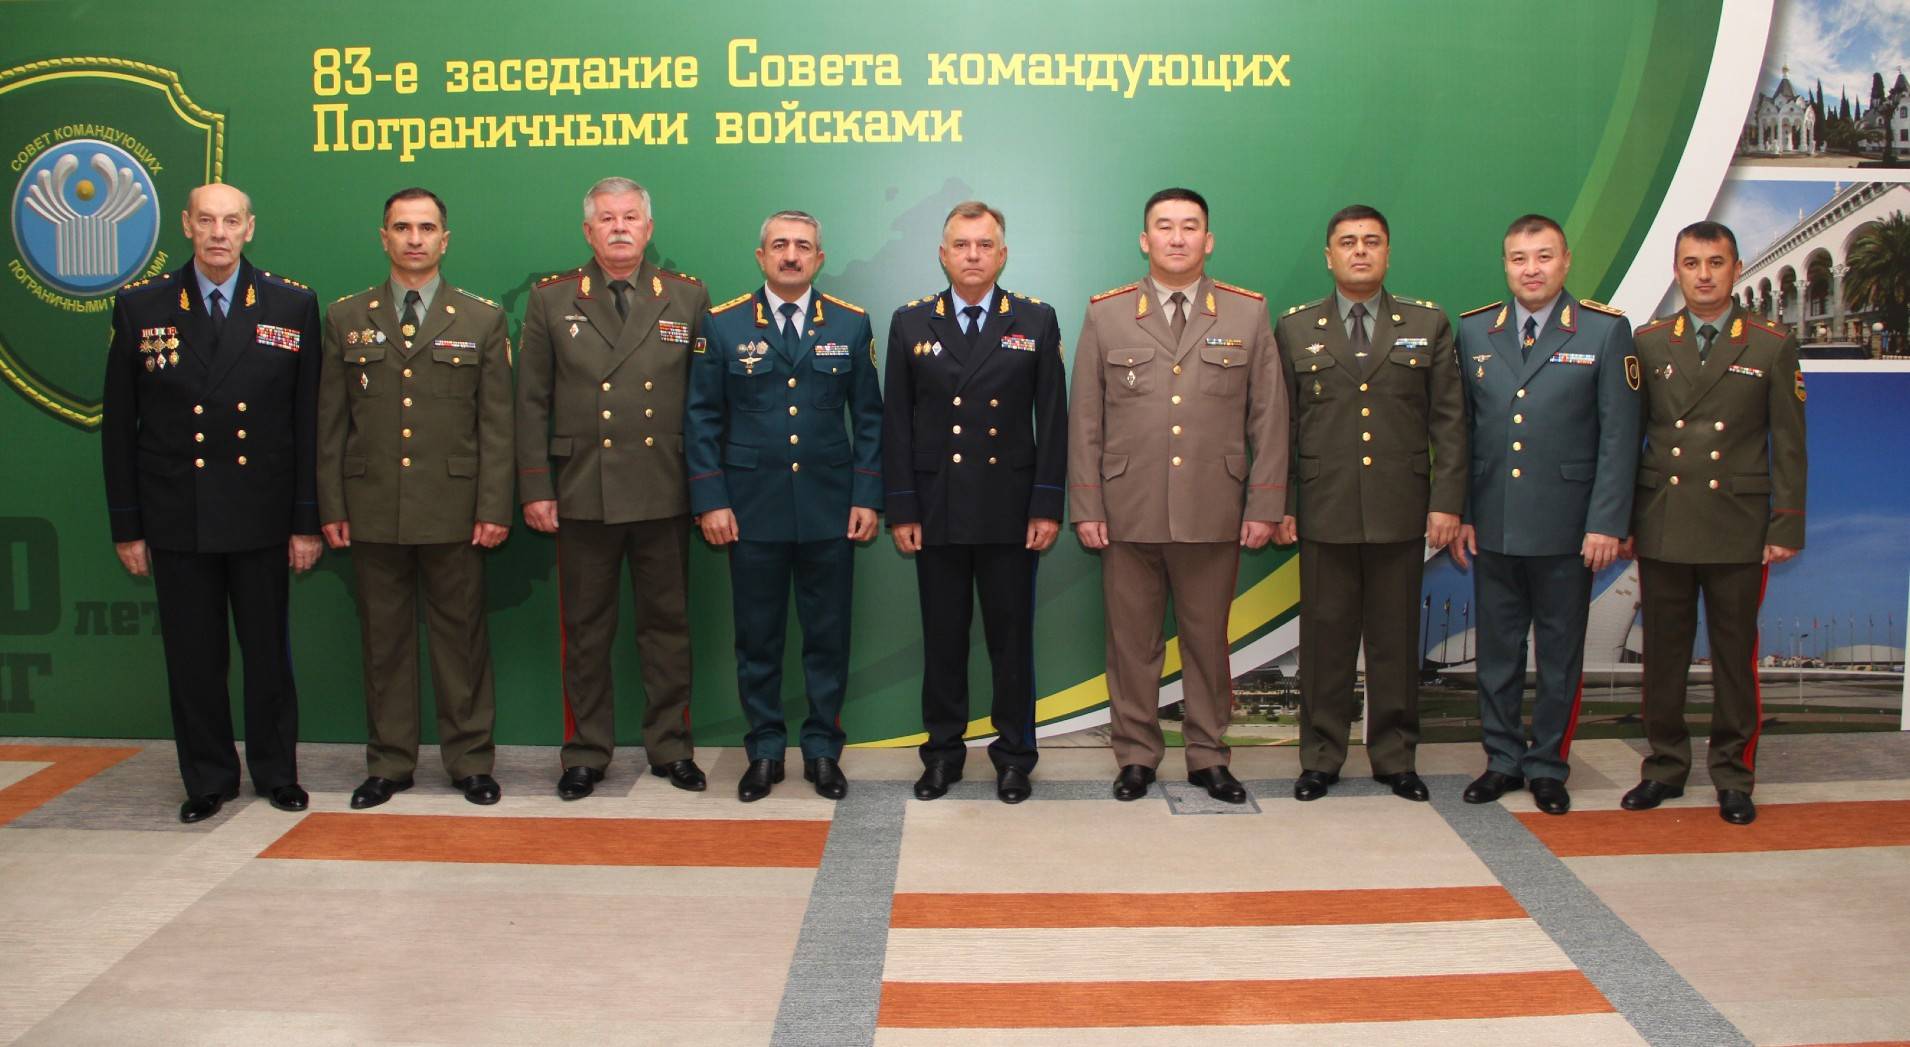 Состоялось 83-е заседание Совета командующих Пограничными войсками